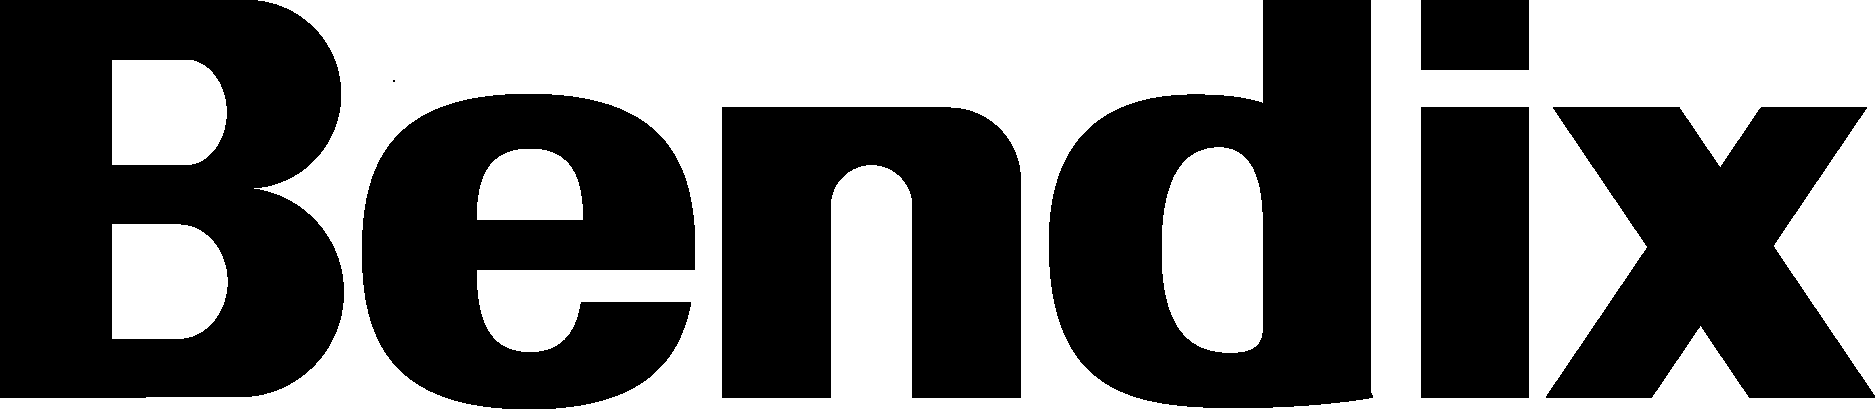 Bendix Wordmark Logo Vector